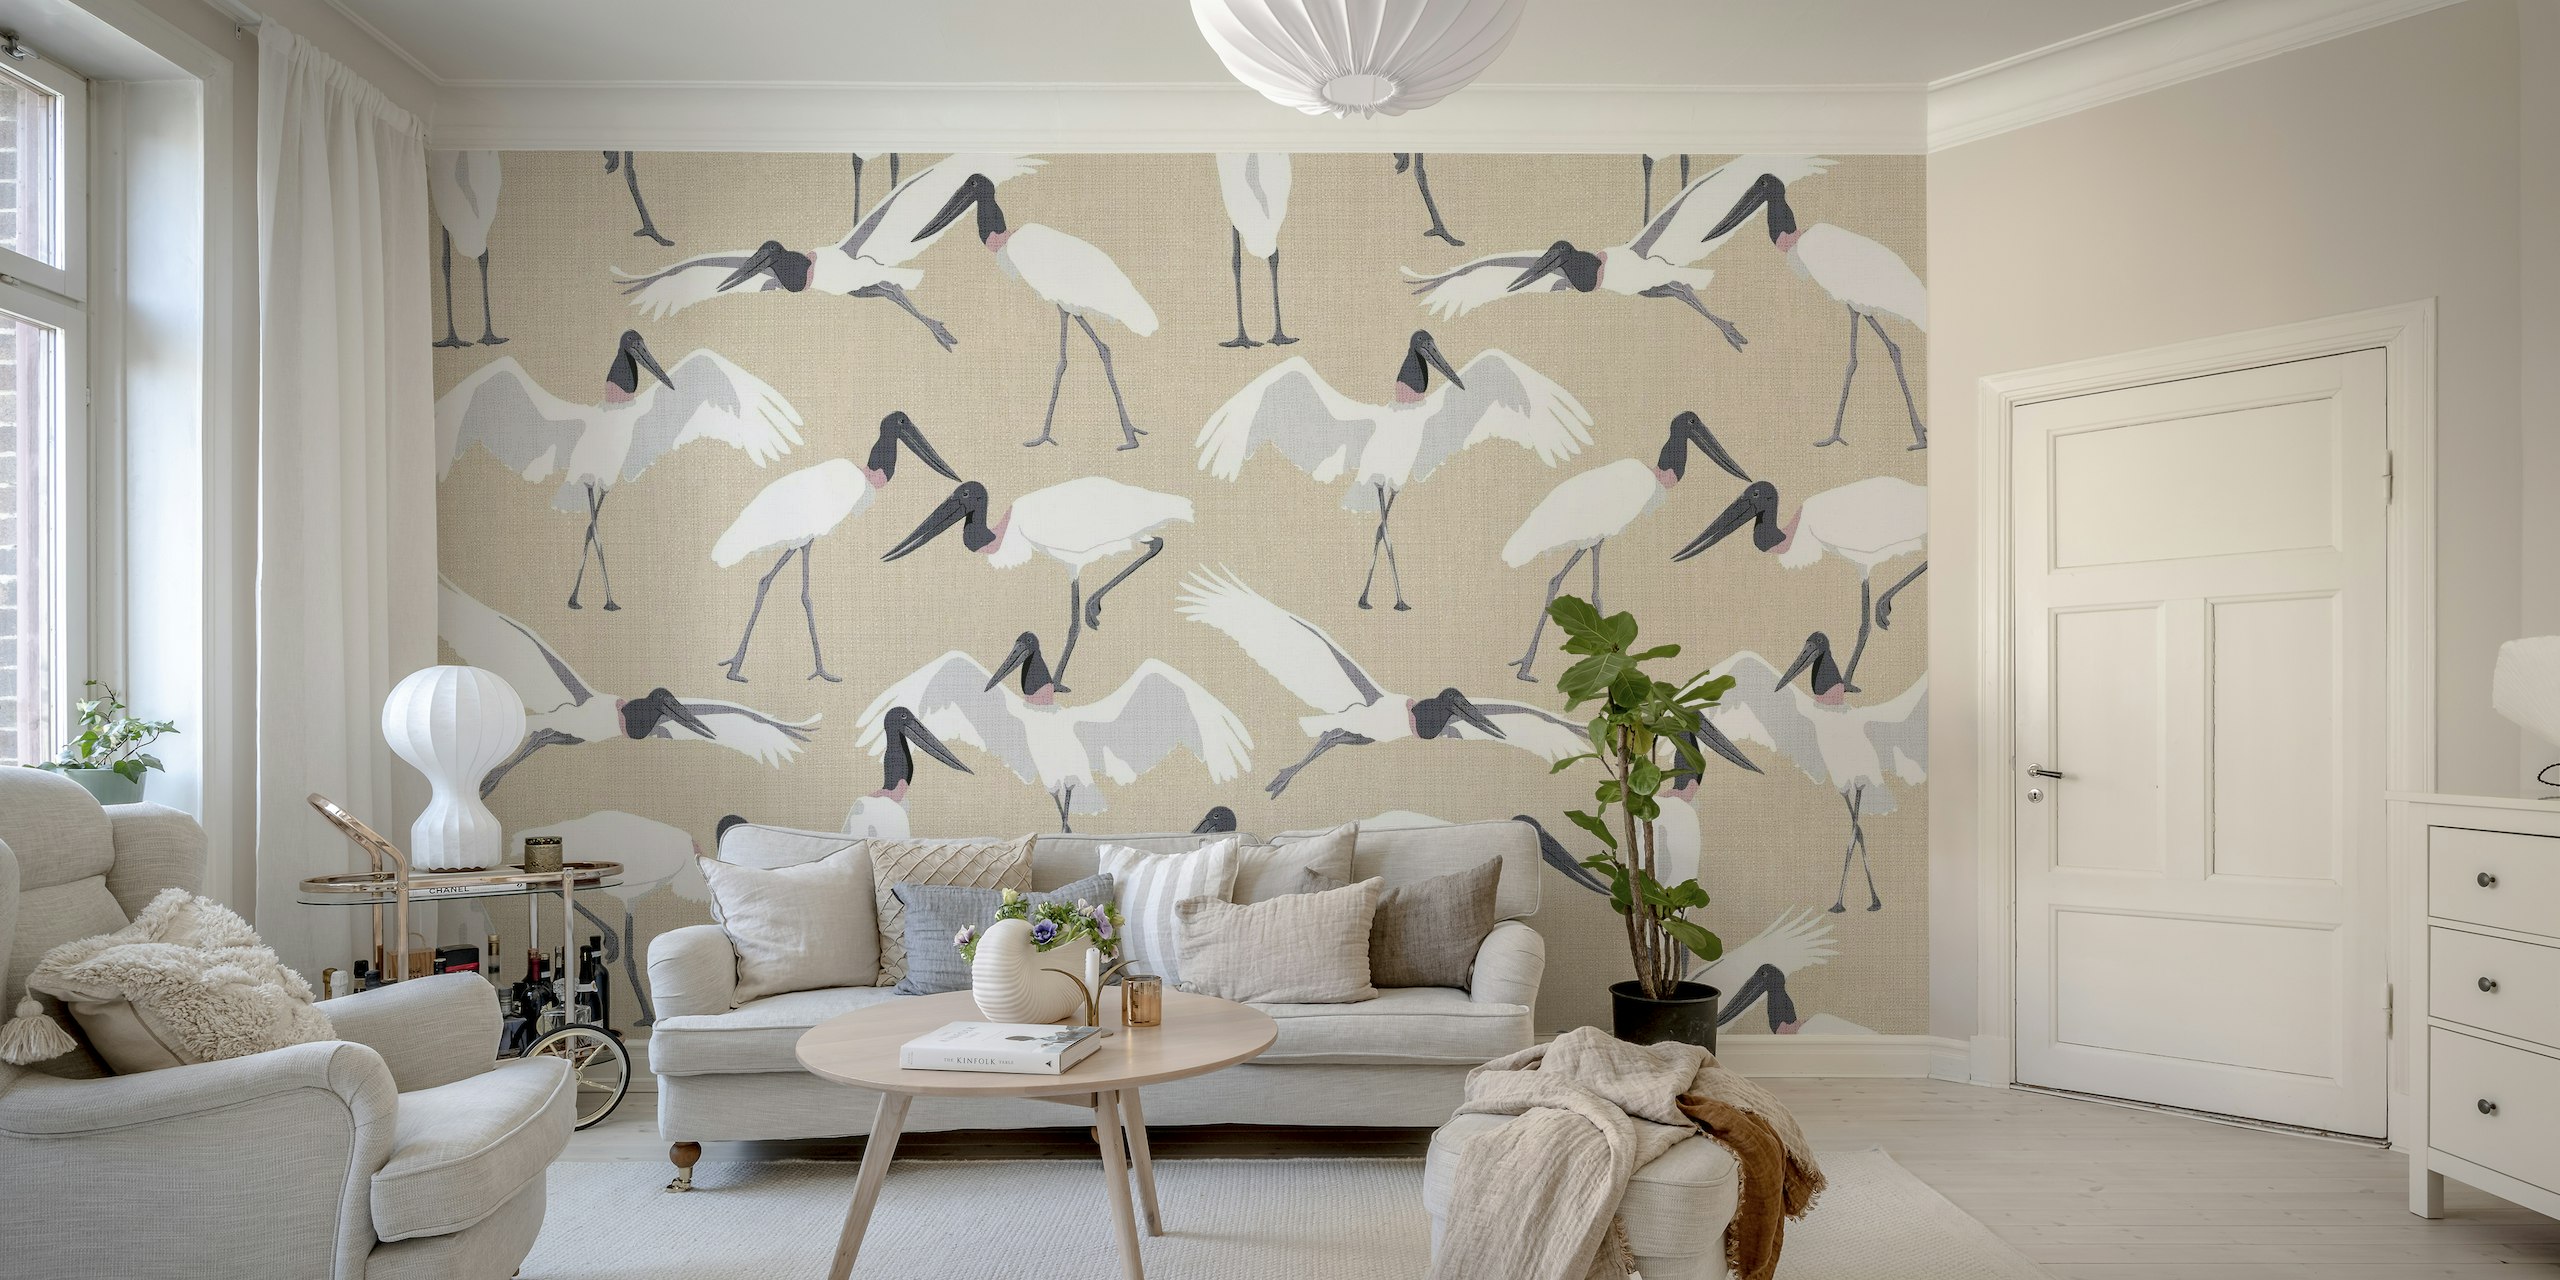 Ilustração estilizada de elegantes pássaros Tuiuiu em um fotomural vinílico de fundo bege arenoso